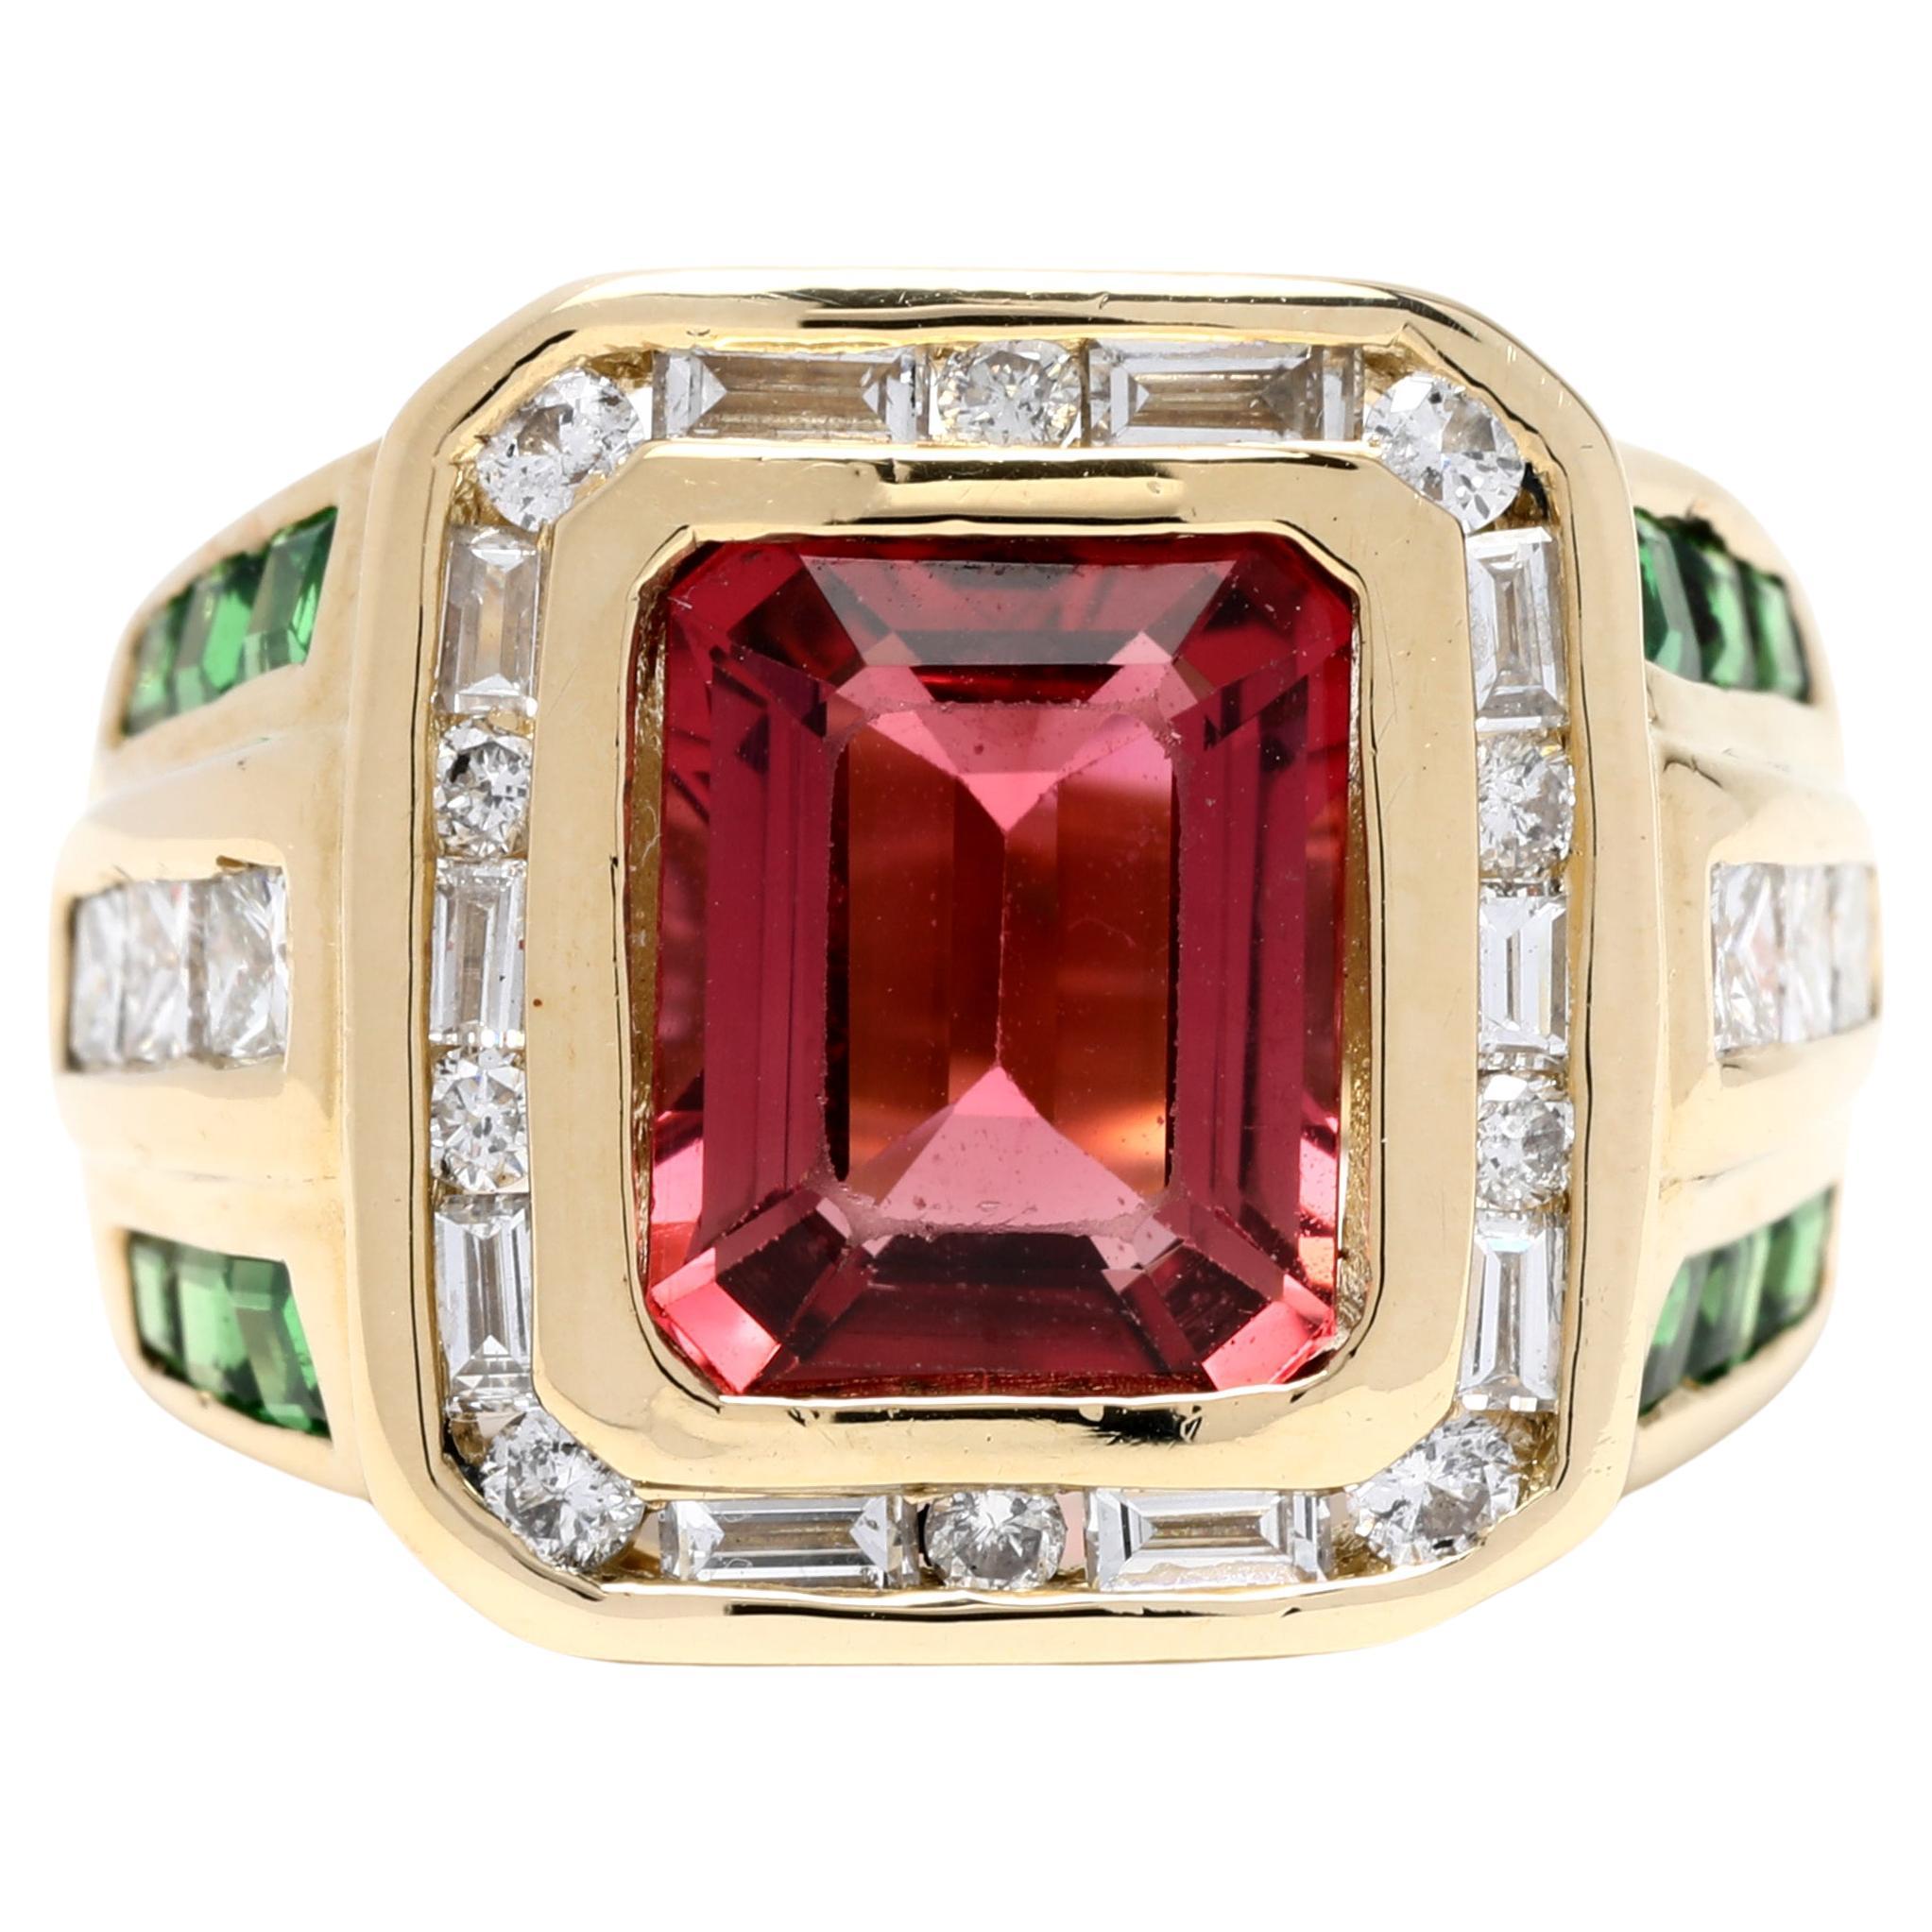 5.5ctw Pink Tourmaline Diamond Tsavorite Garnet Ring, 14k YG, Ring